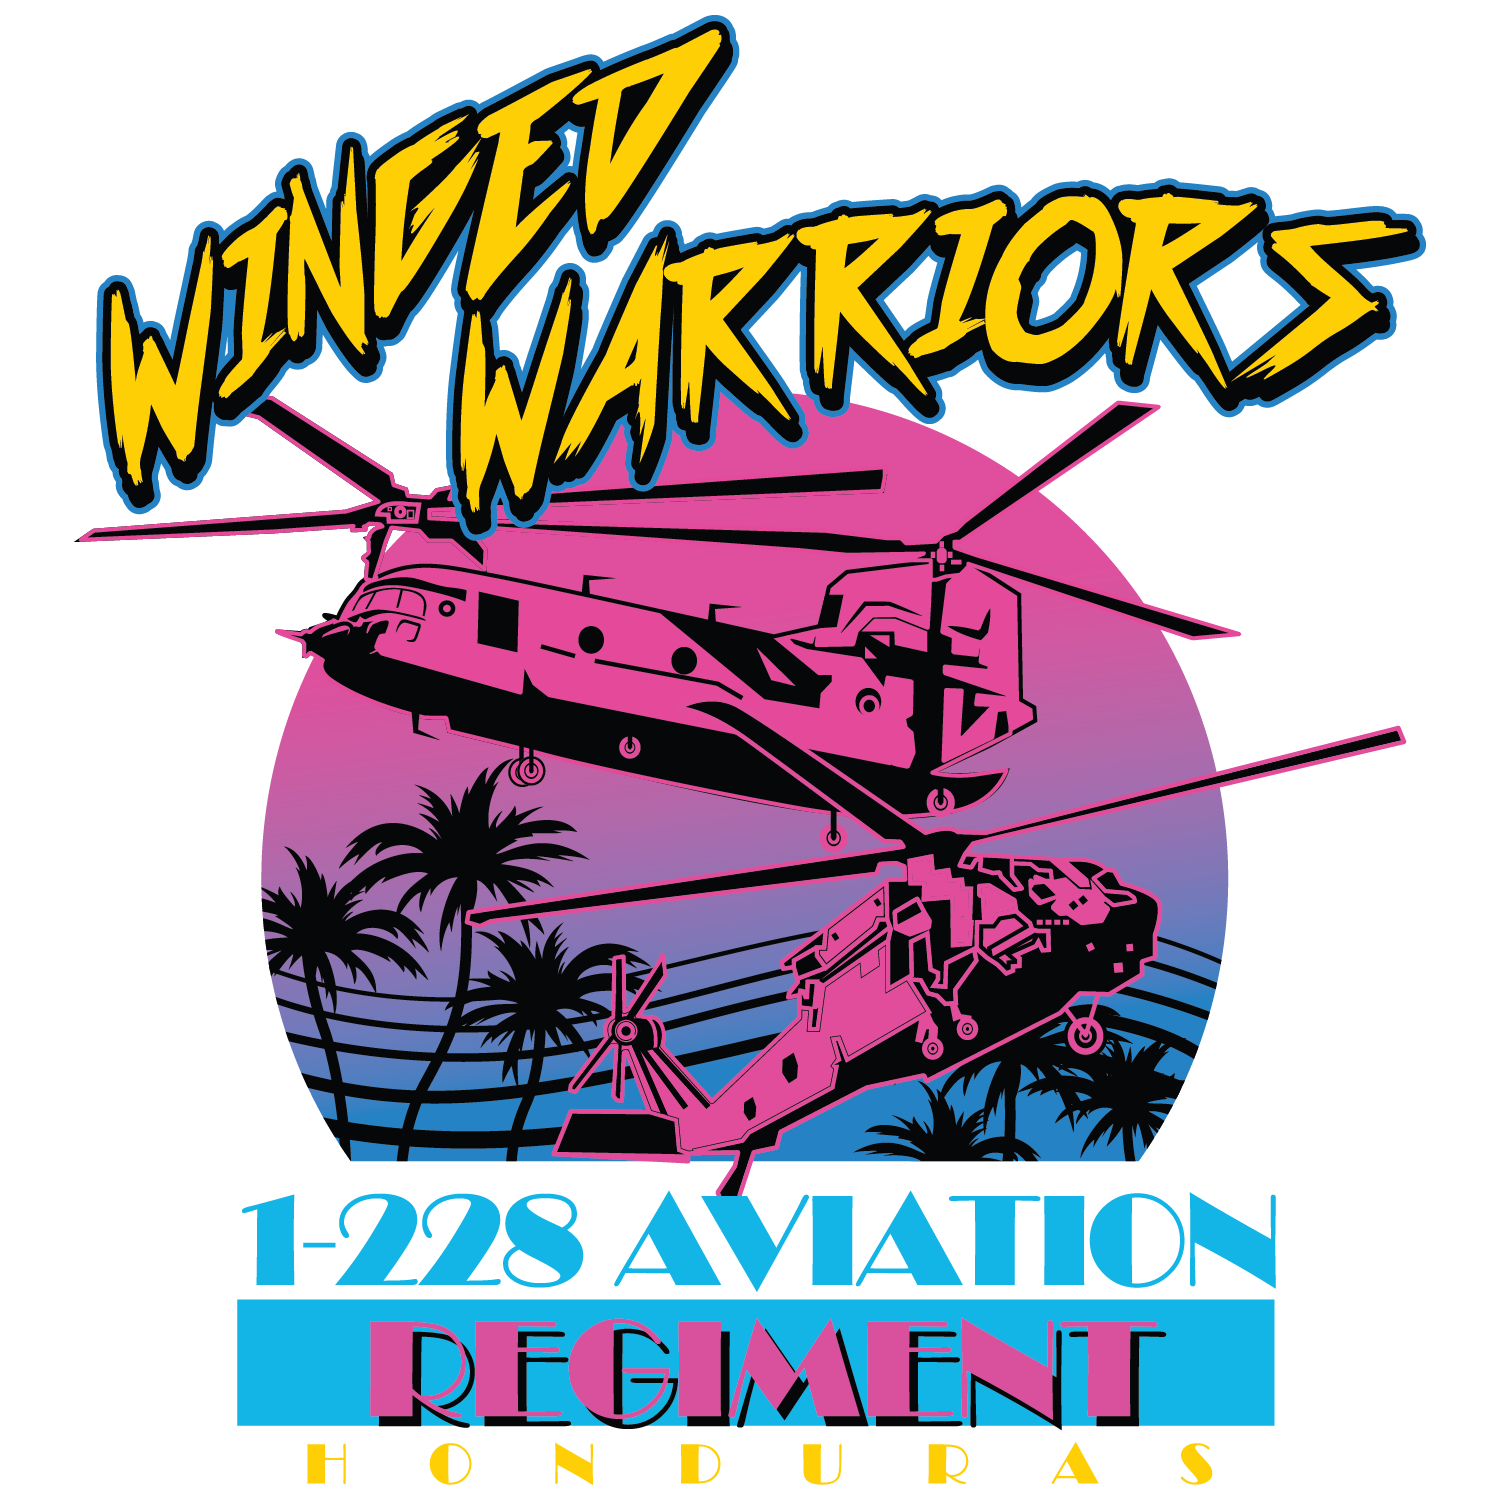 1-228 AVN REG "Winged Warriors"